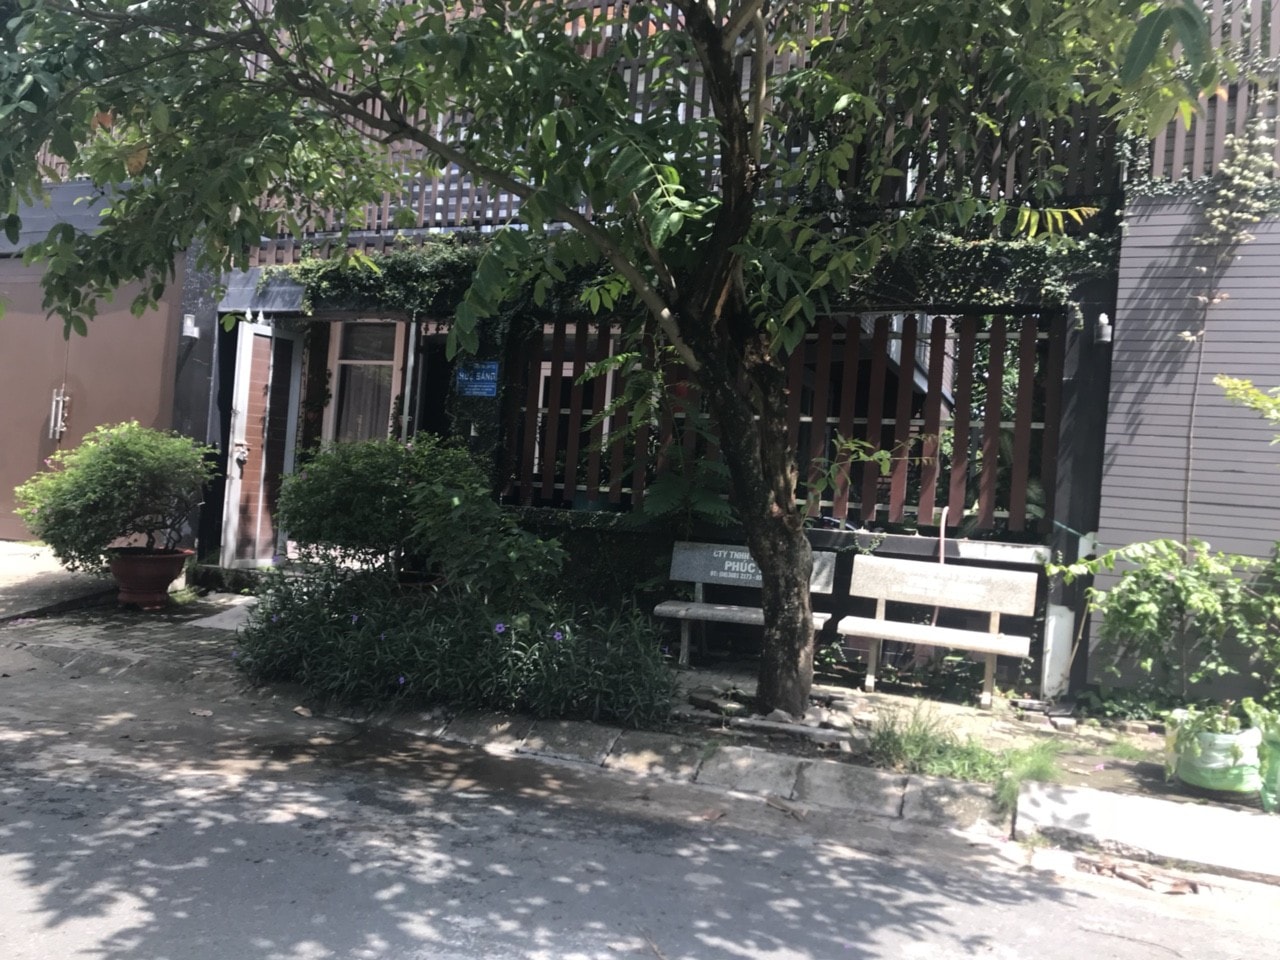 Cần bán lại căn nhà biệt thự tại khu Dân cư Nam Long - Đỗ Xuân Hợp - Phước Long B - Quận 9 - Tp.Hồ Chí Minh